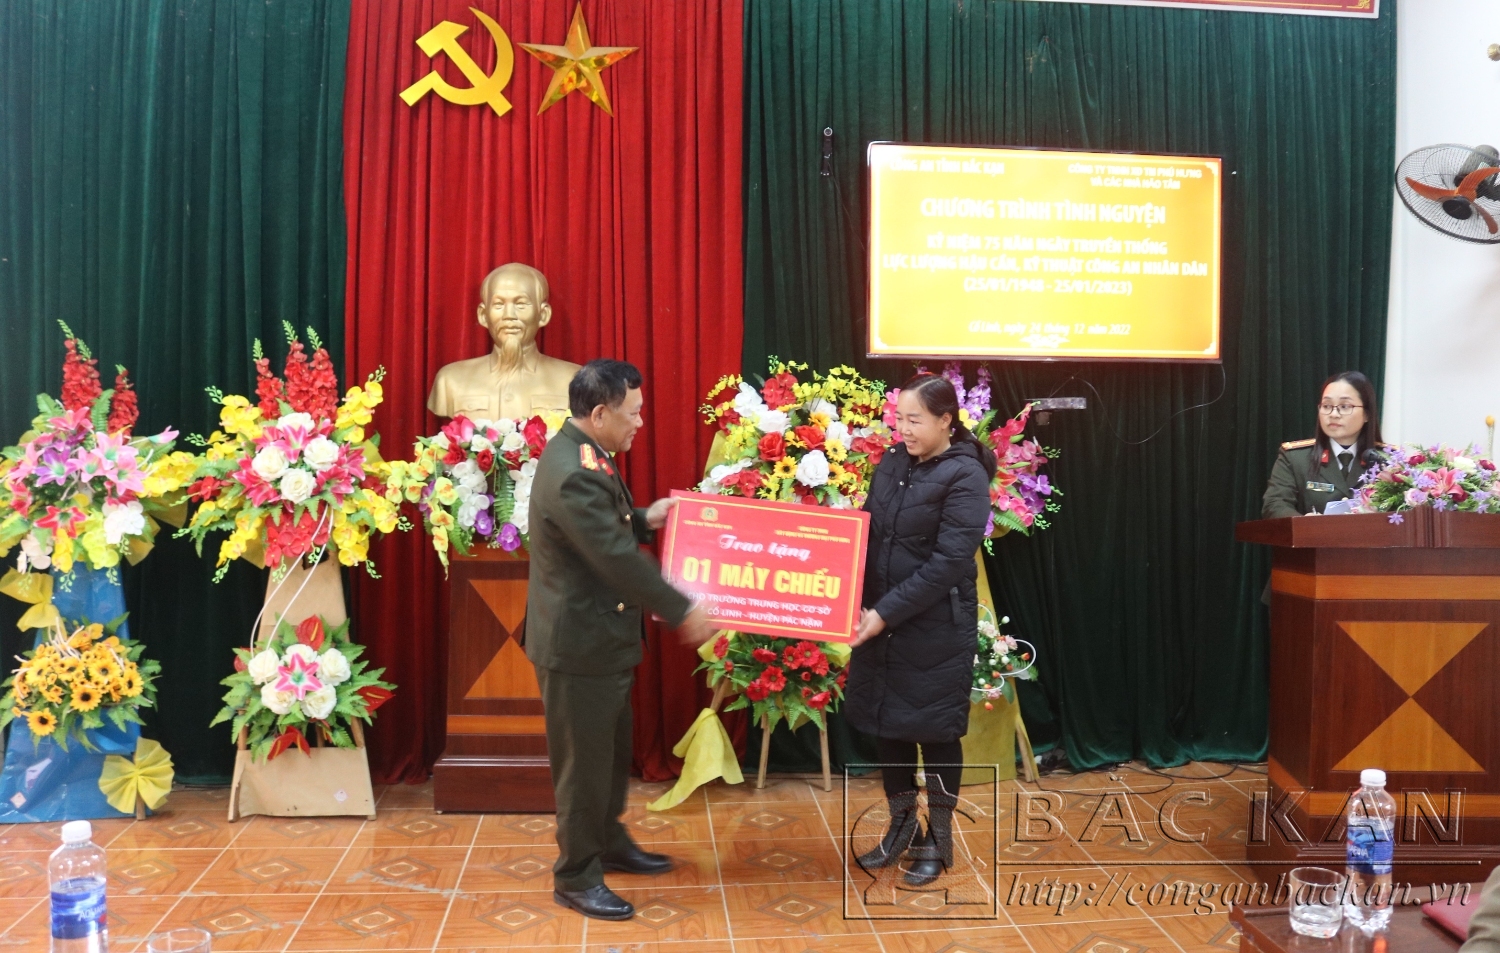  Đại tá Đinh Quang Huy, Phó Giám đốc Công an tỉnh trao quà cho đại diện Trường THCS